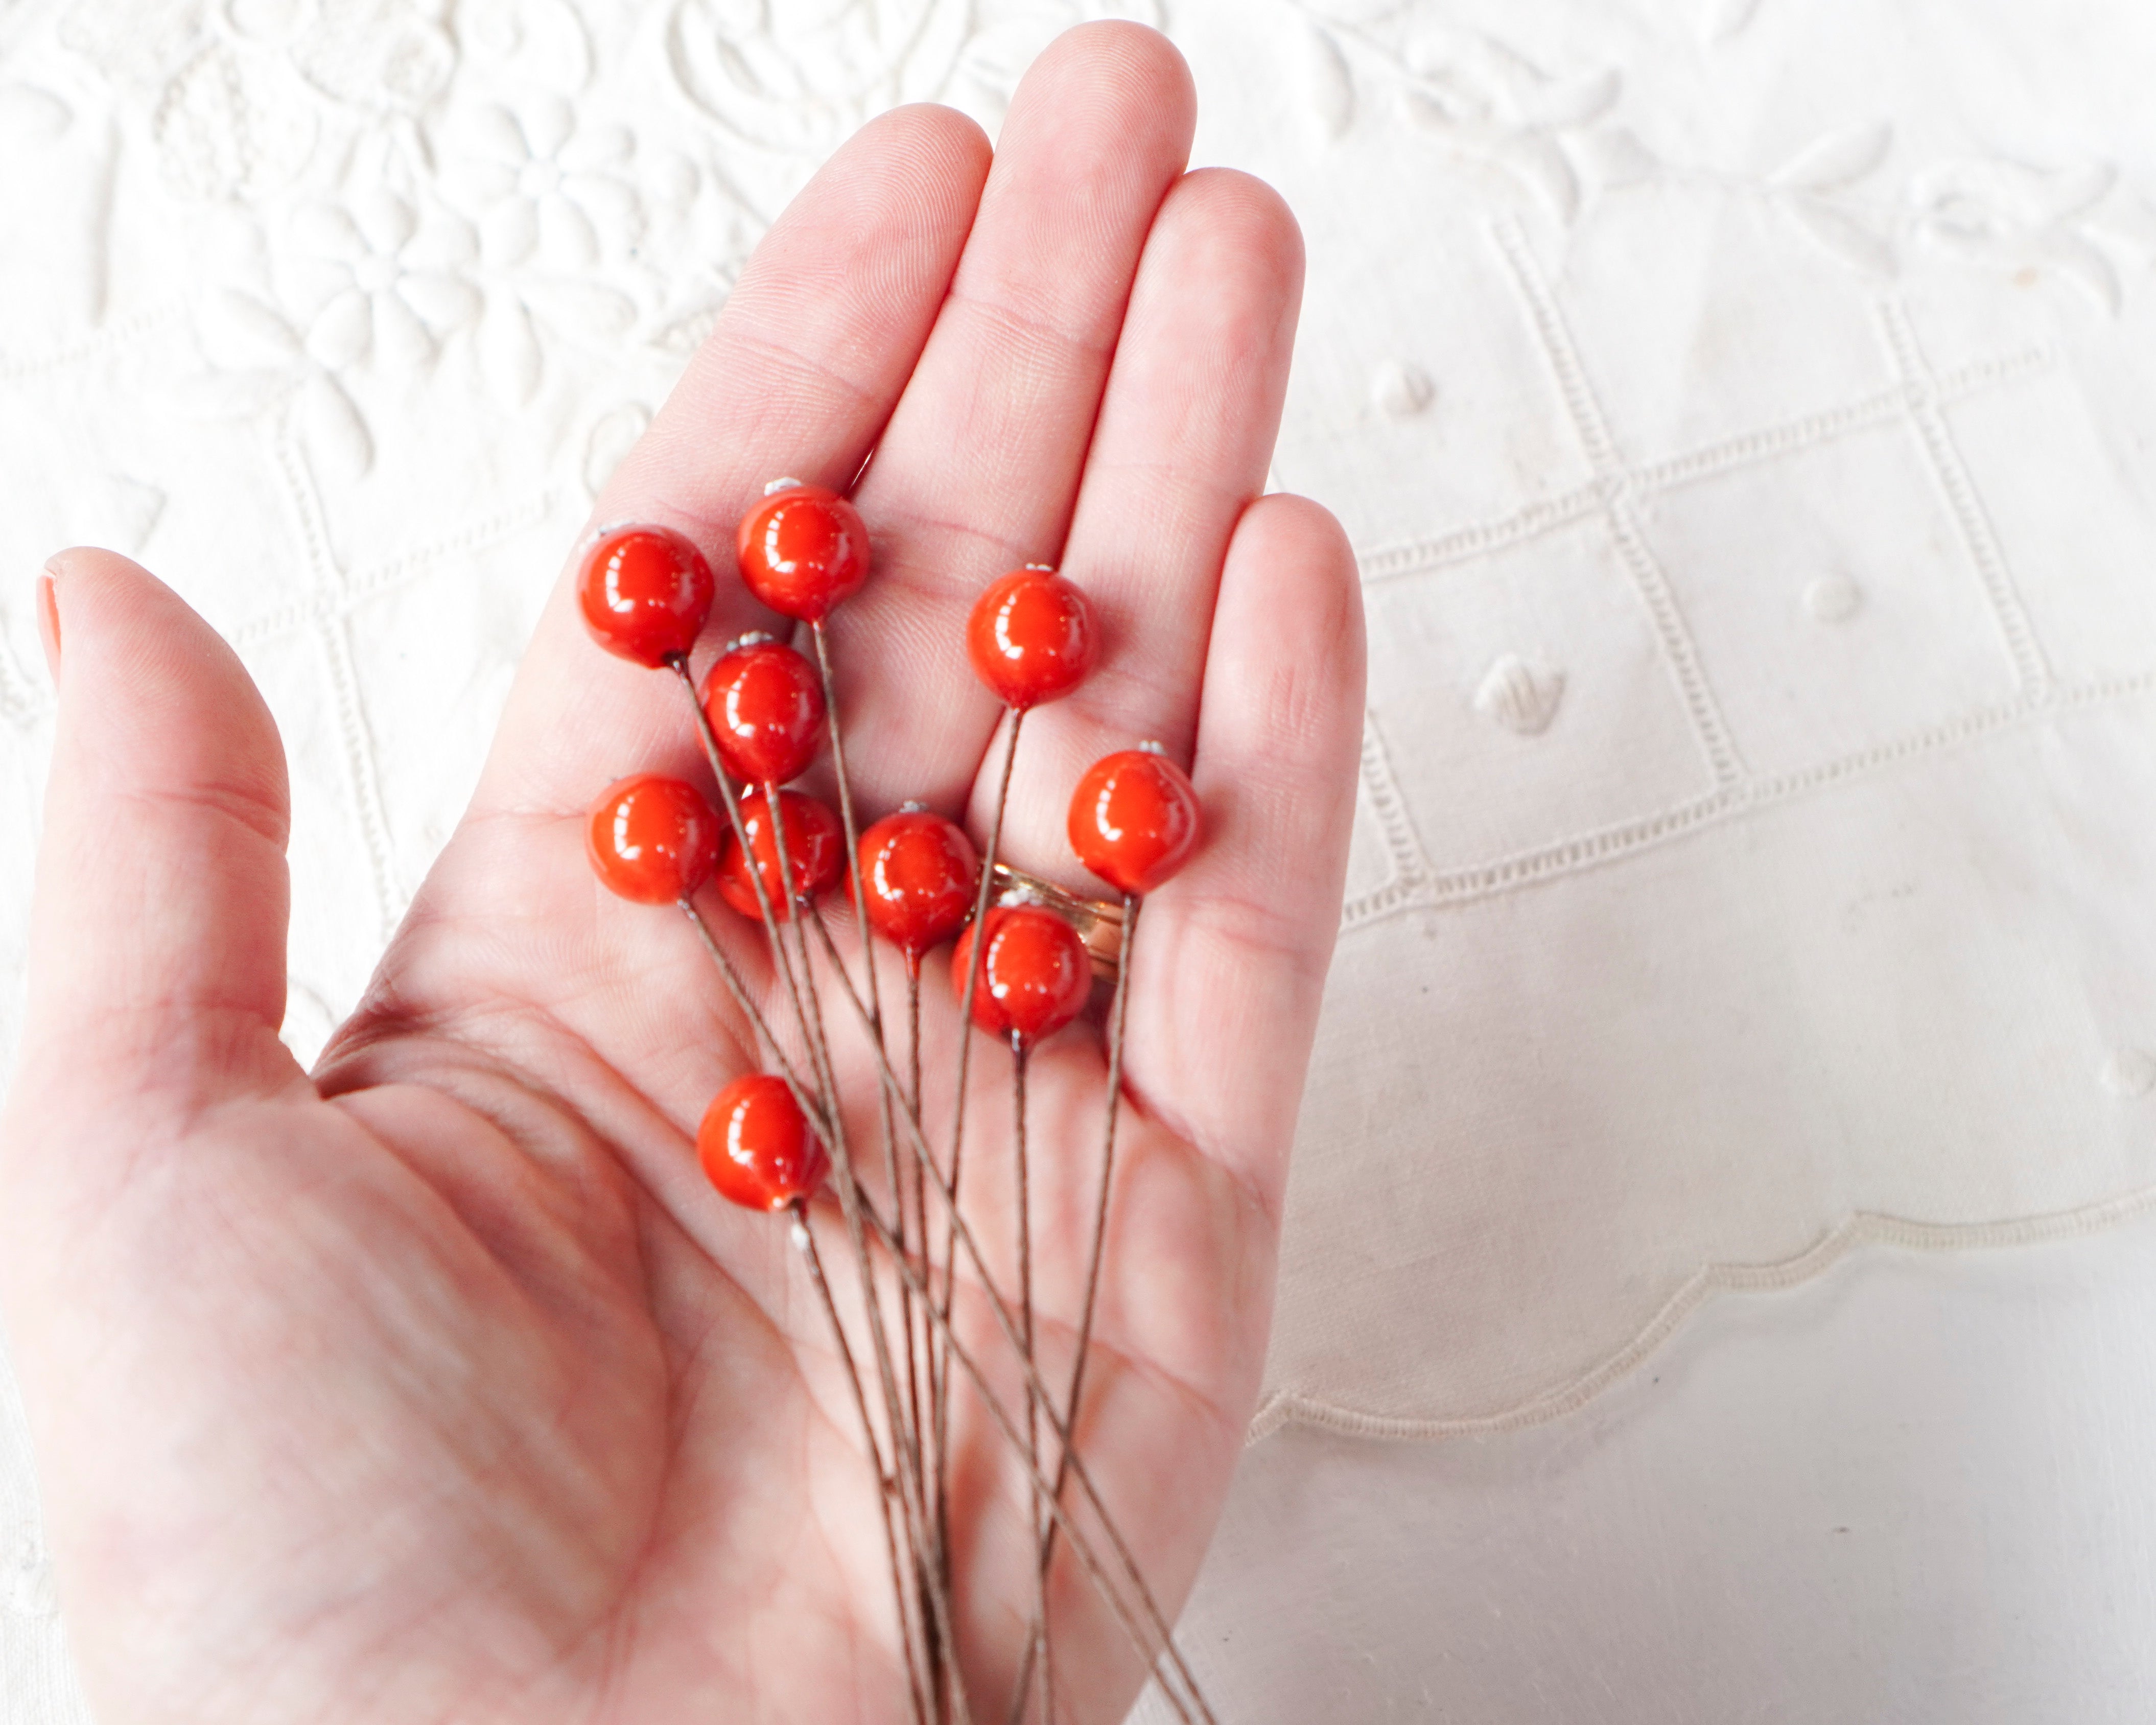 Red Berries - Mini Spun Cotton Berry Picks, 10 Pcs.